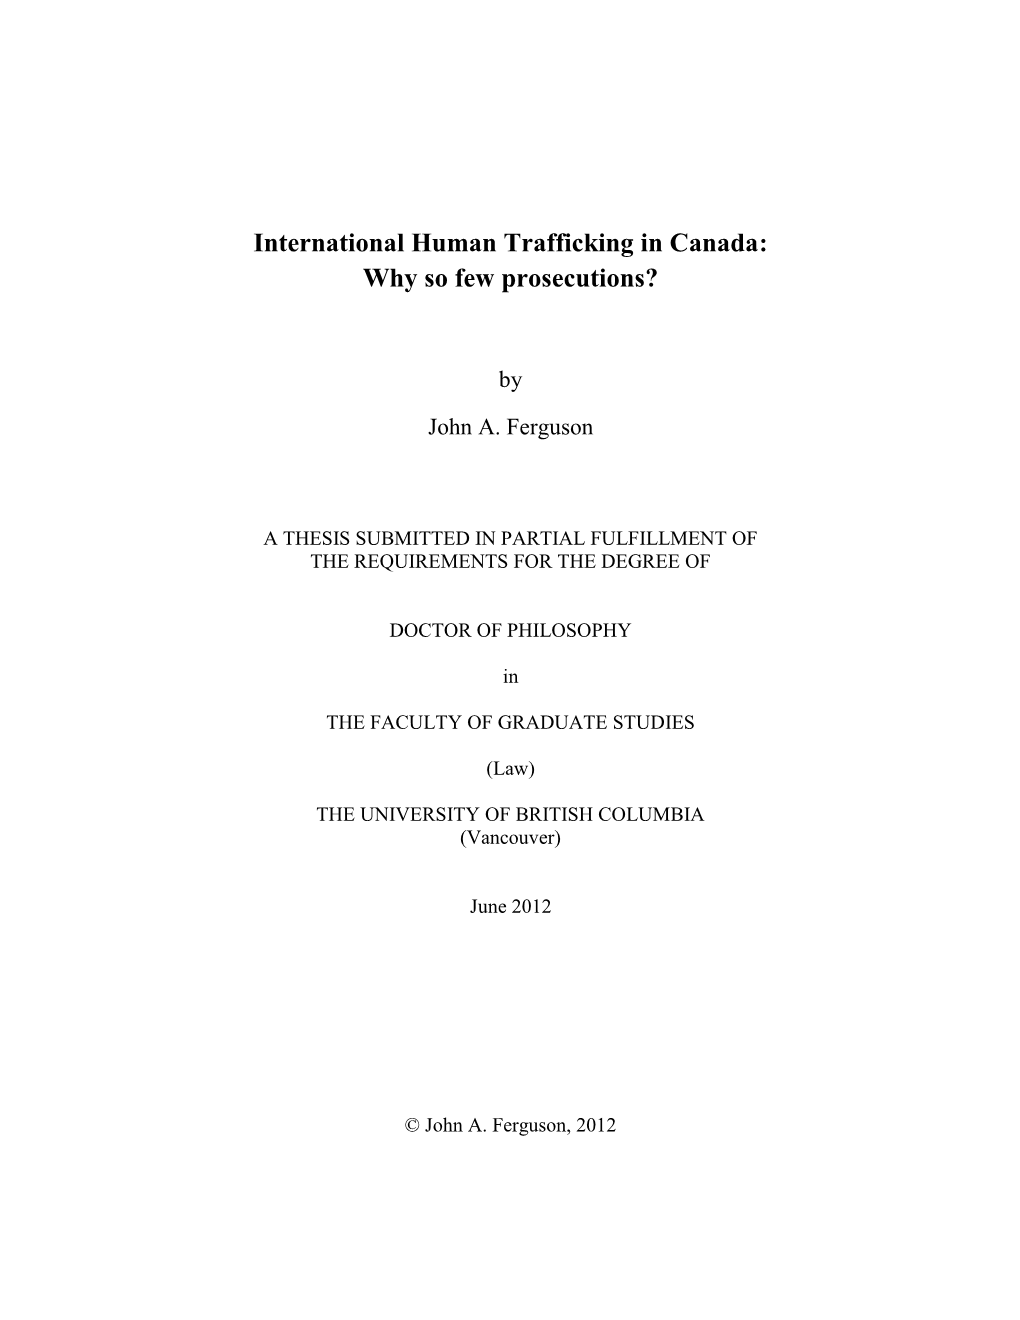 International Human Trafficking in Canada: Why So Few Prosecutions?